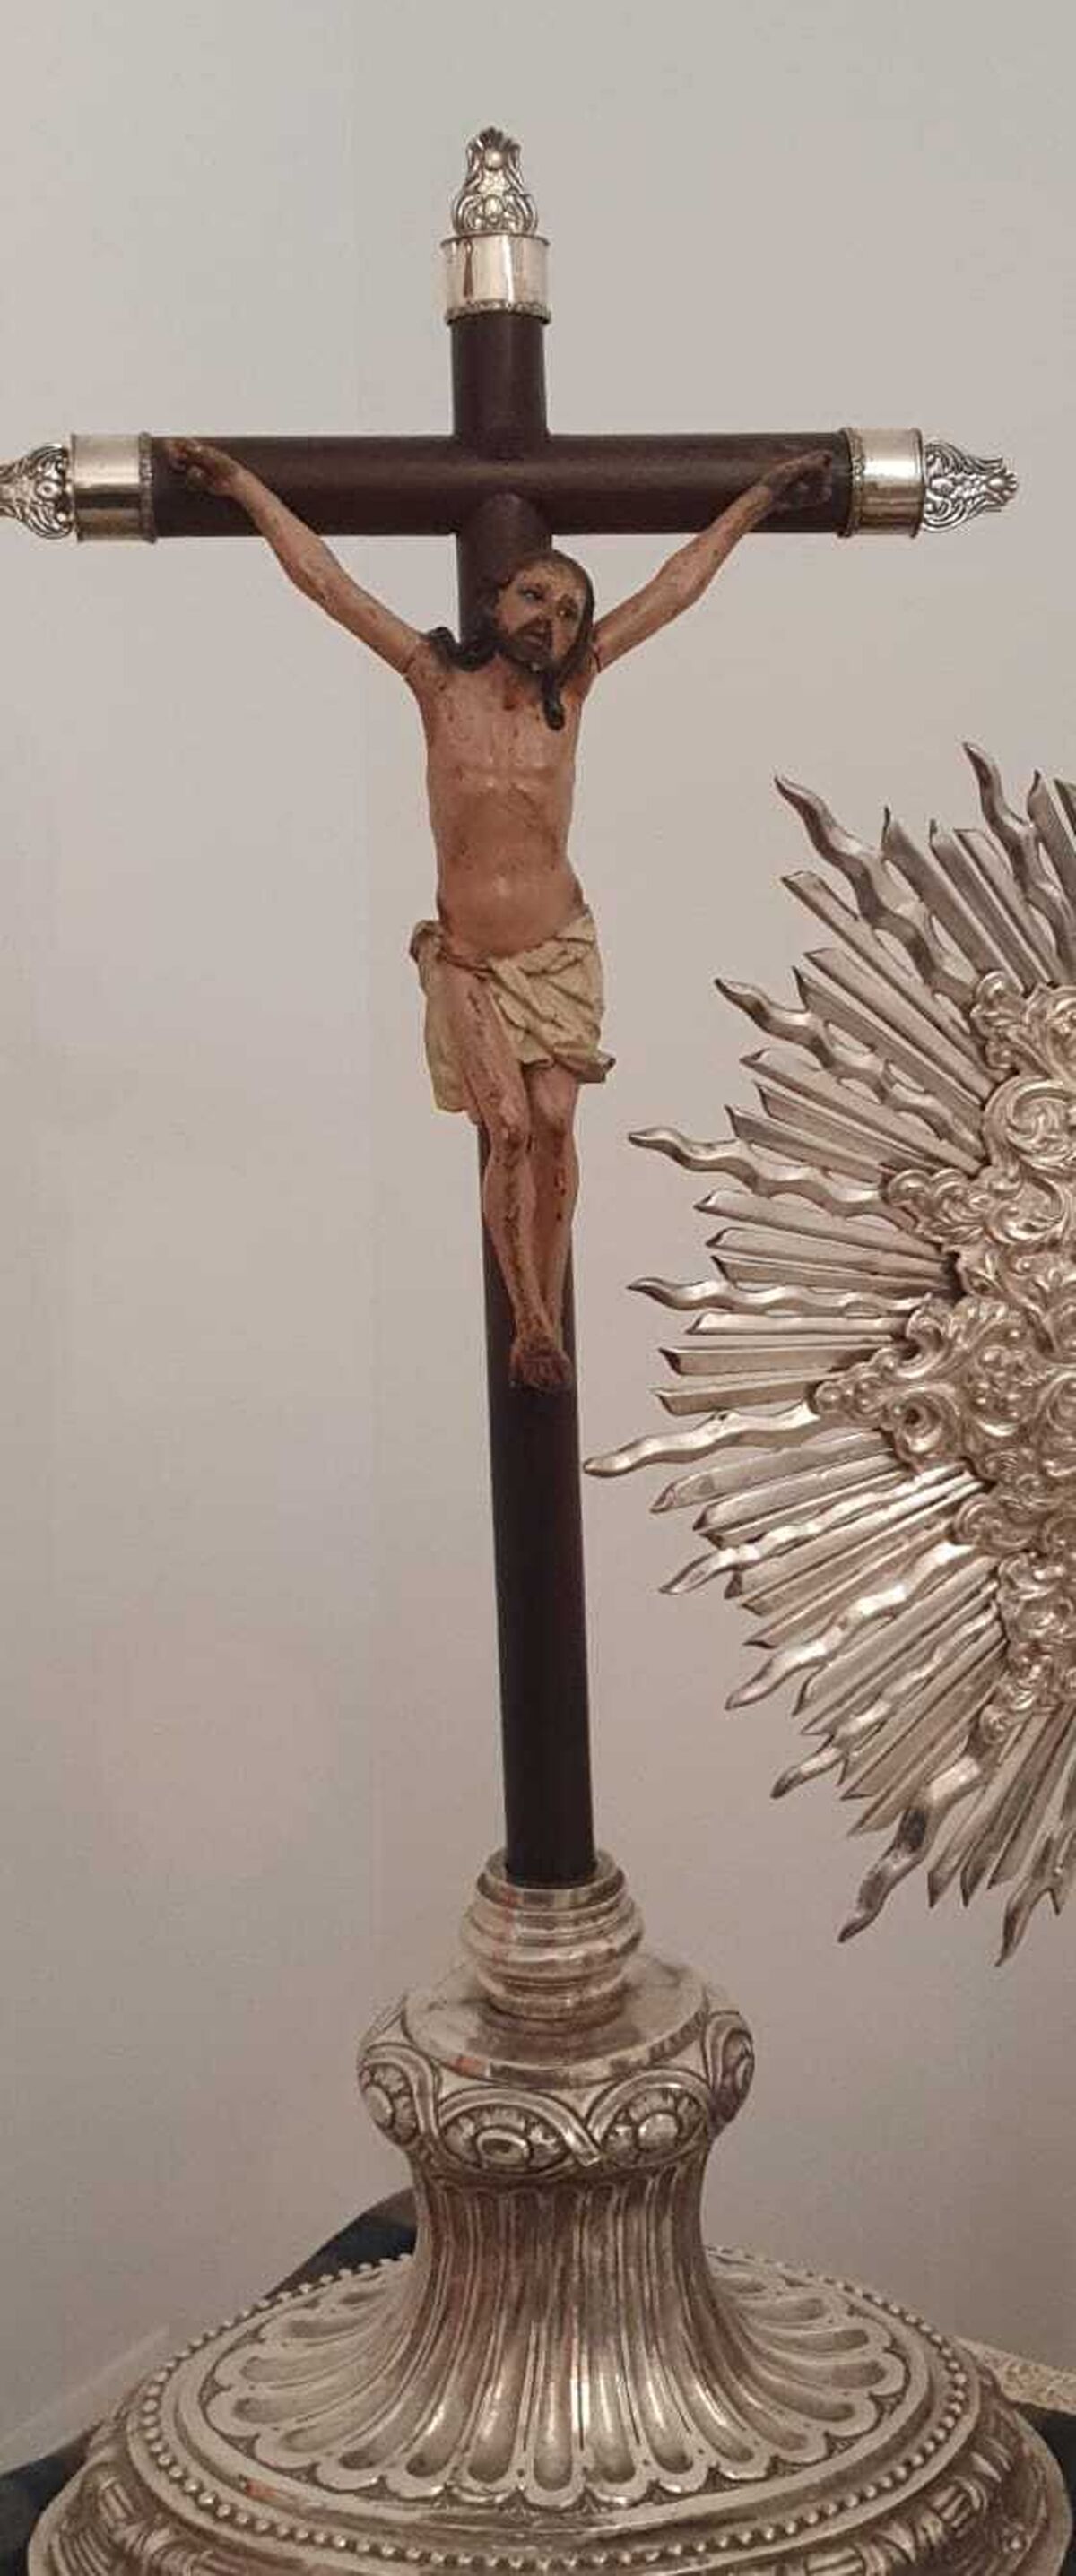 Uno de los crucificados expuestos en la muestra